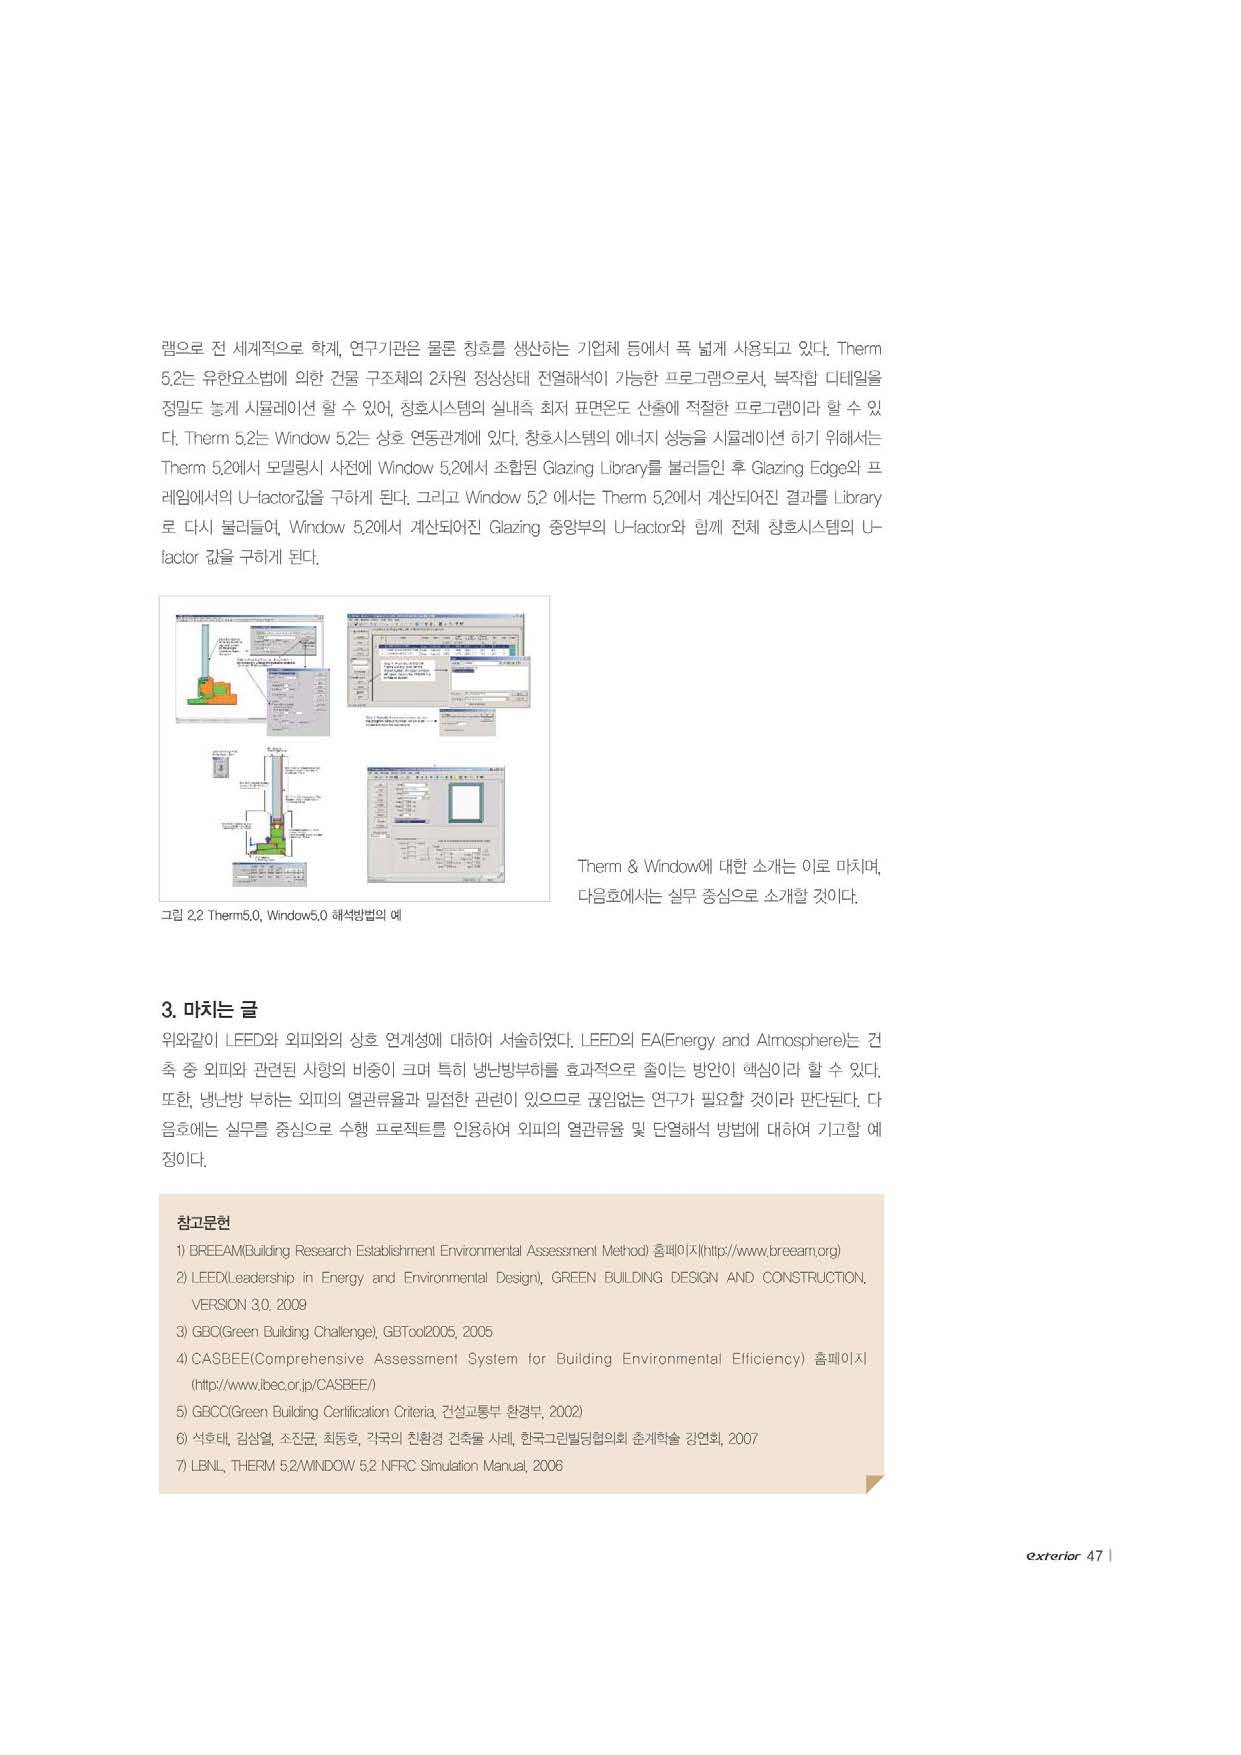 2009. 친환경 건축 인증제도와 외피시스템과의 연계성 1차_페이지_6.jpg